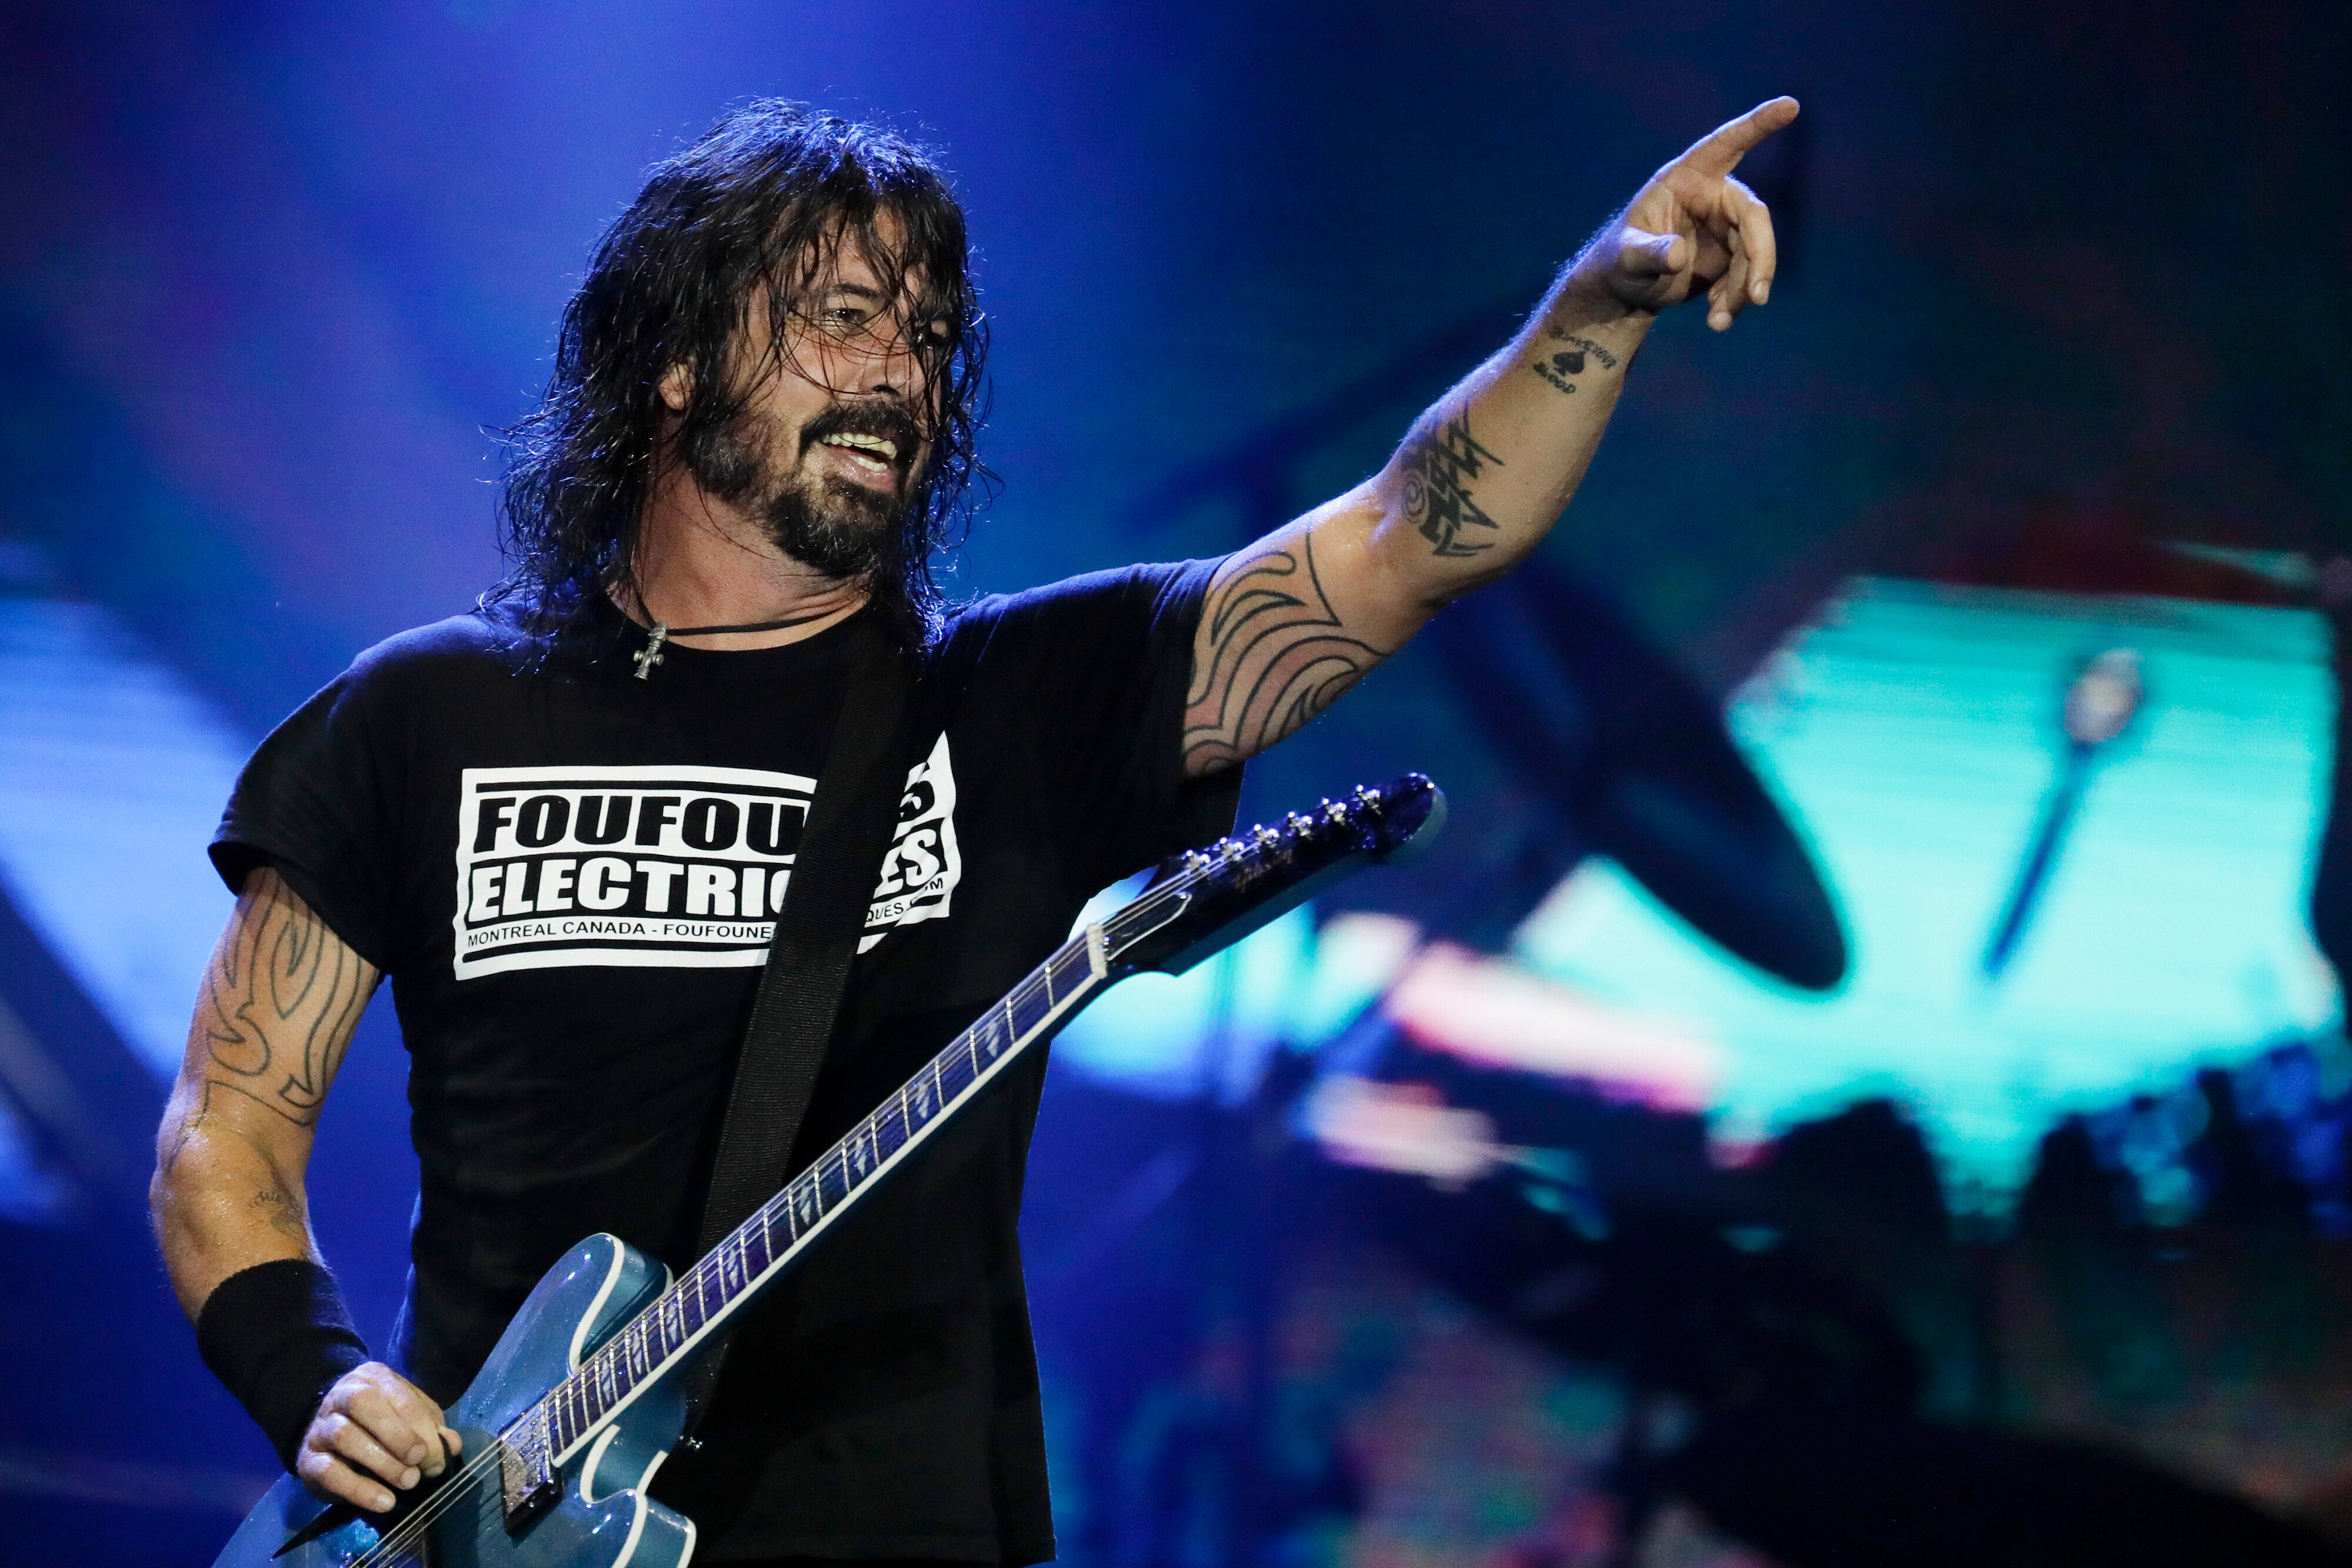 The Town: 4º dia tem Foo Fighters histórico, mas lineup desequilibrado